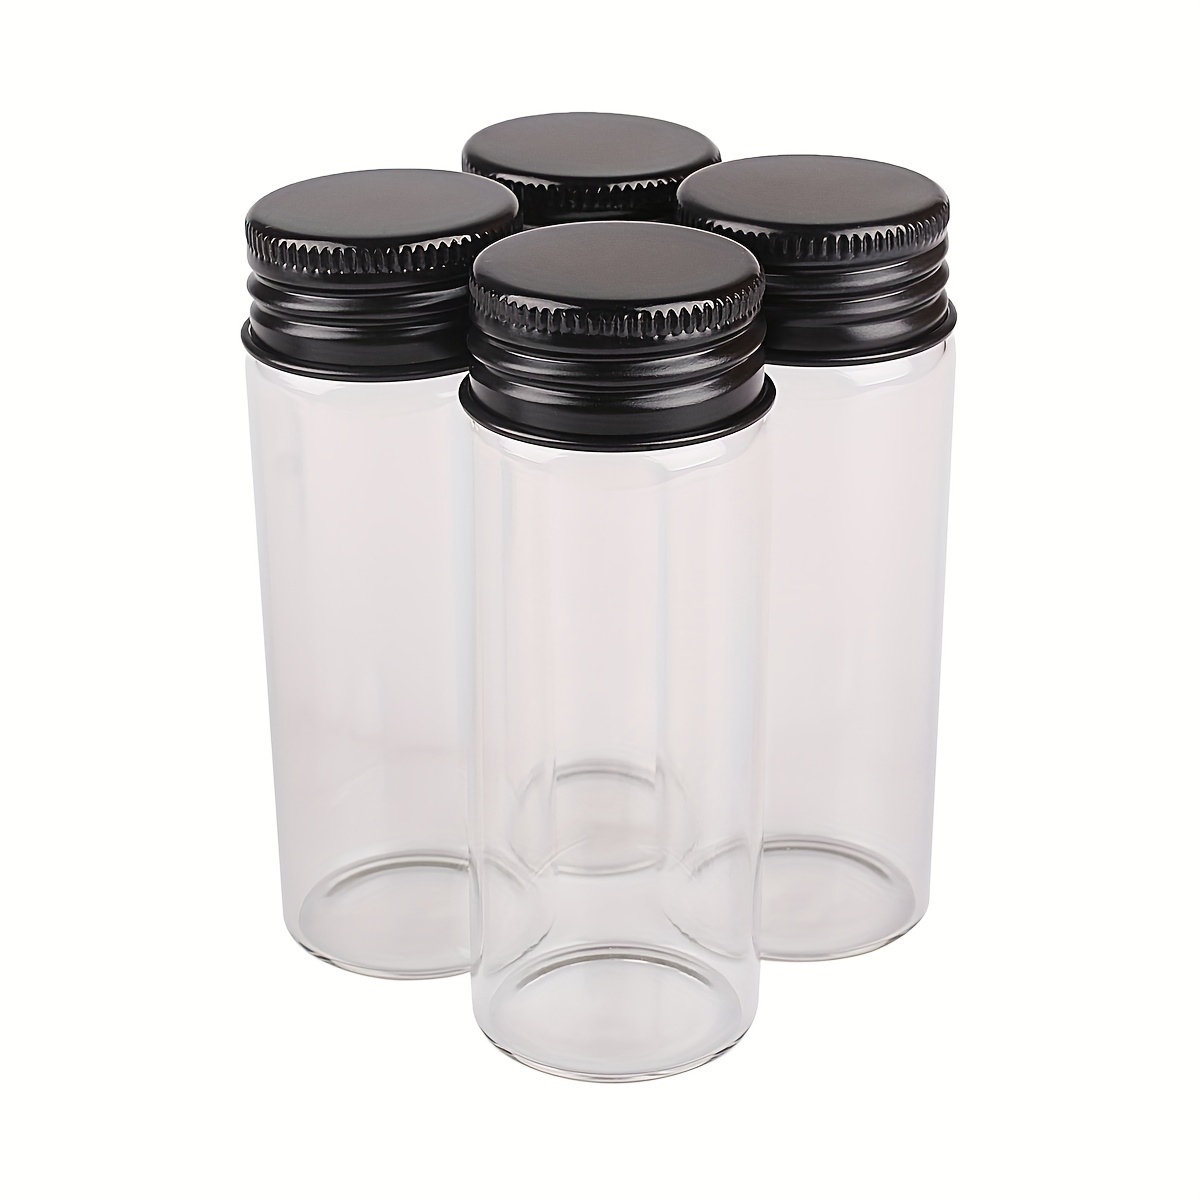 Botellas de vidrio con tapas de aluminio, Mini frascos de vidrio pequeños,  9 tamaños U, 5ml, 6ml, 7ml, 10ml, 14ml, 18ml, 20ml, 25ml, 30ml, 10